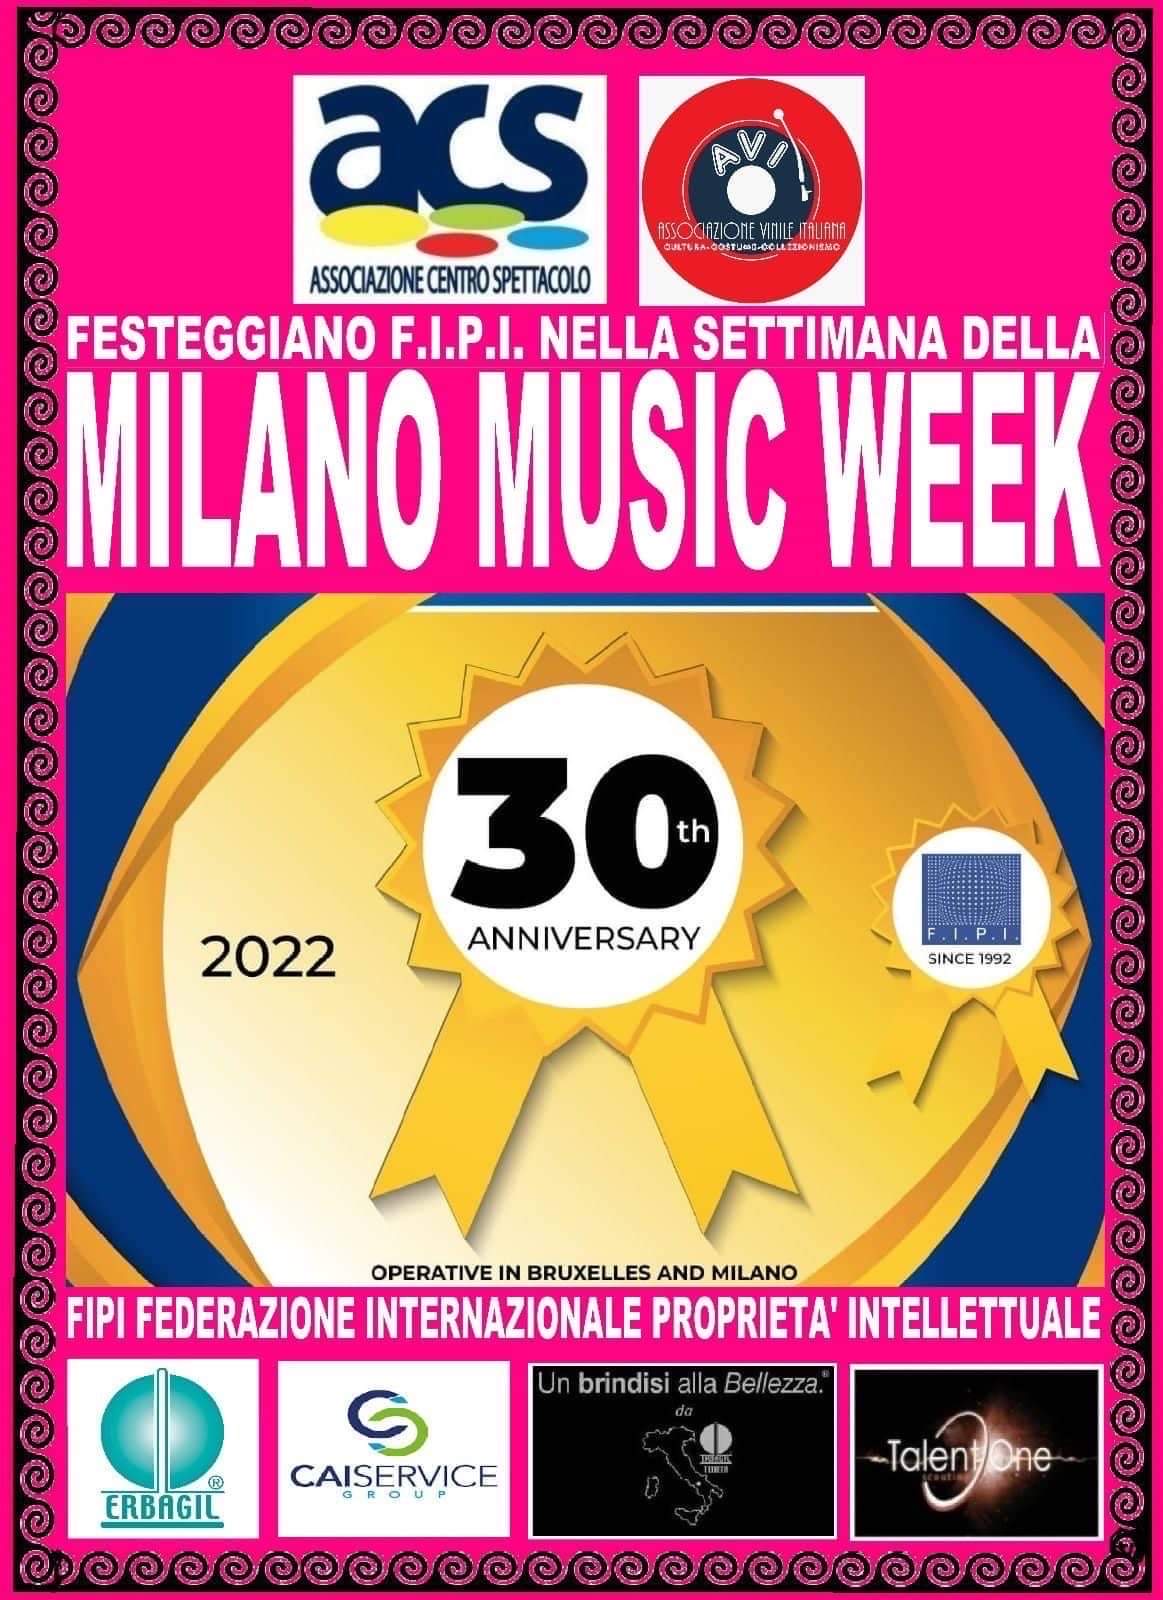 Milano Music Week